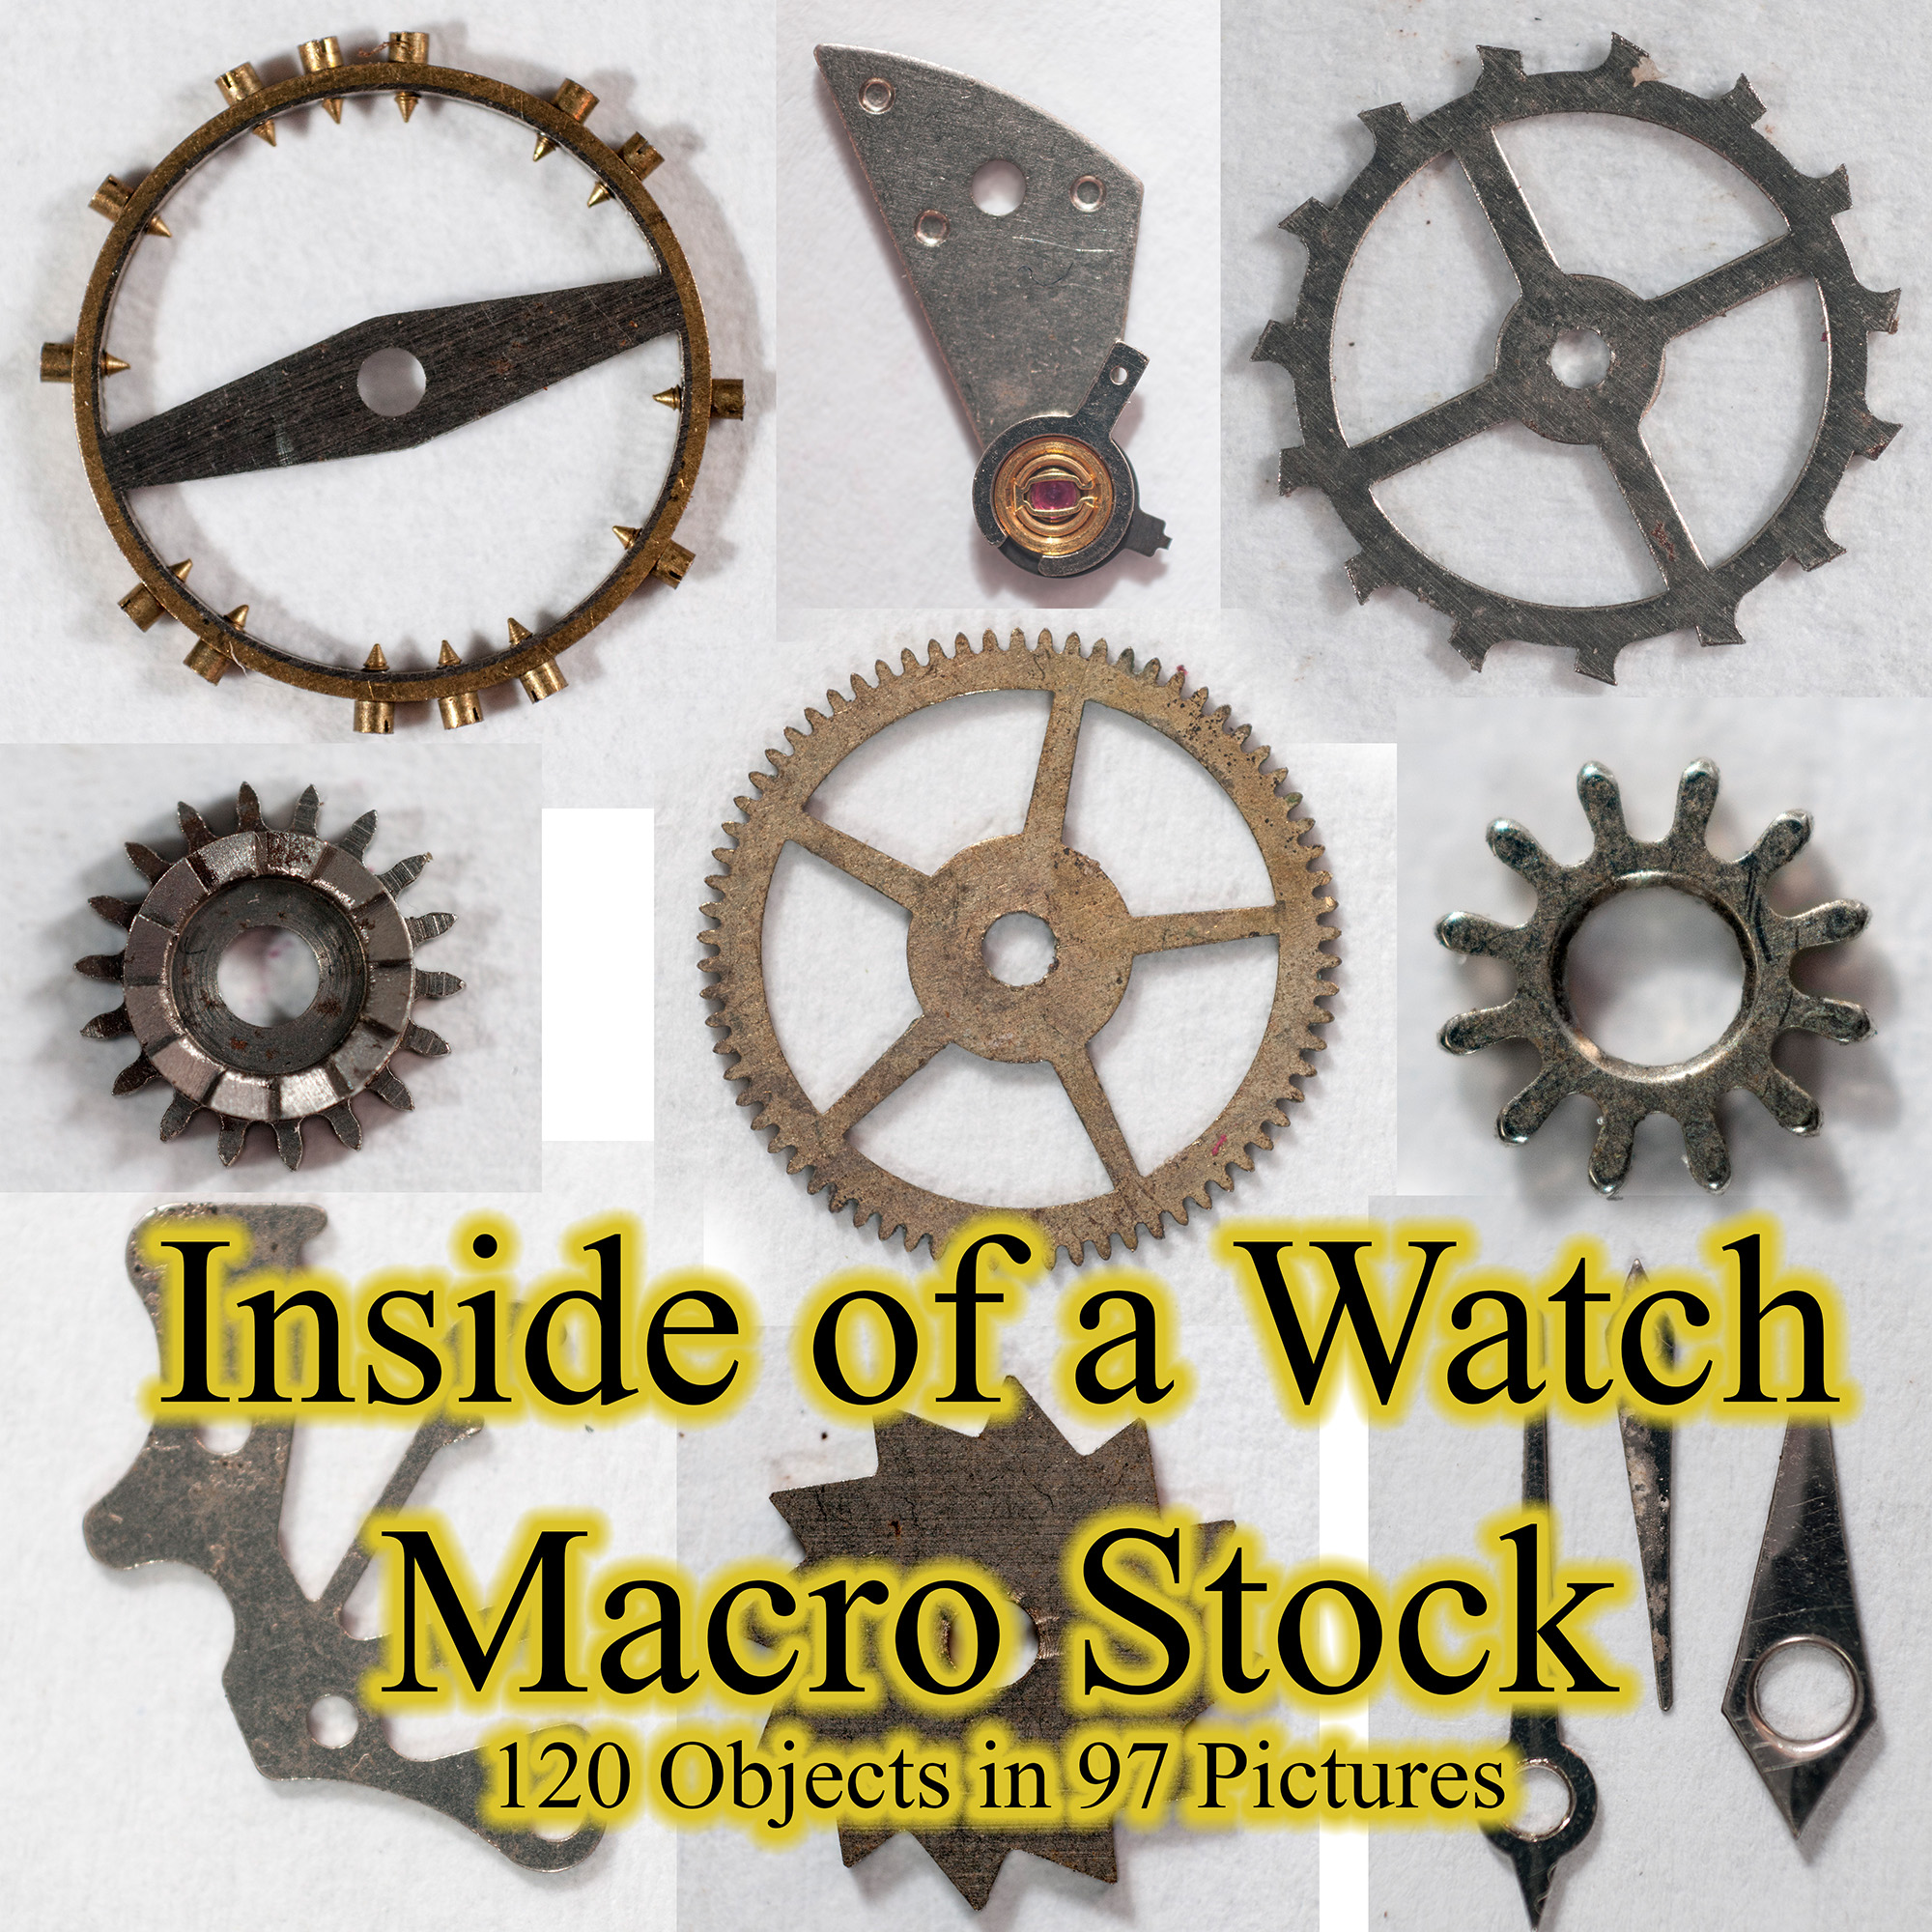 Inside Of A Watch Macro Stock By Horitsu (CC0)